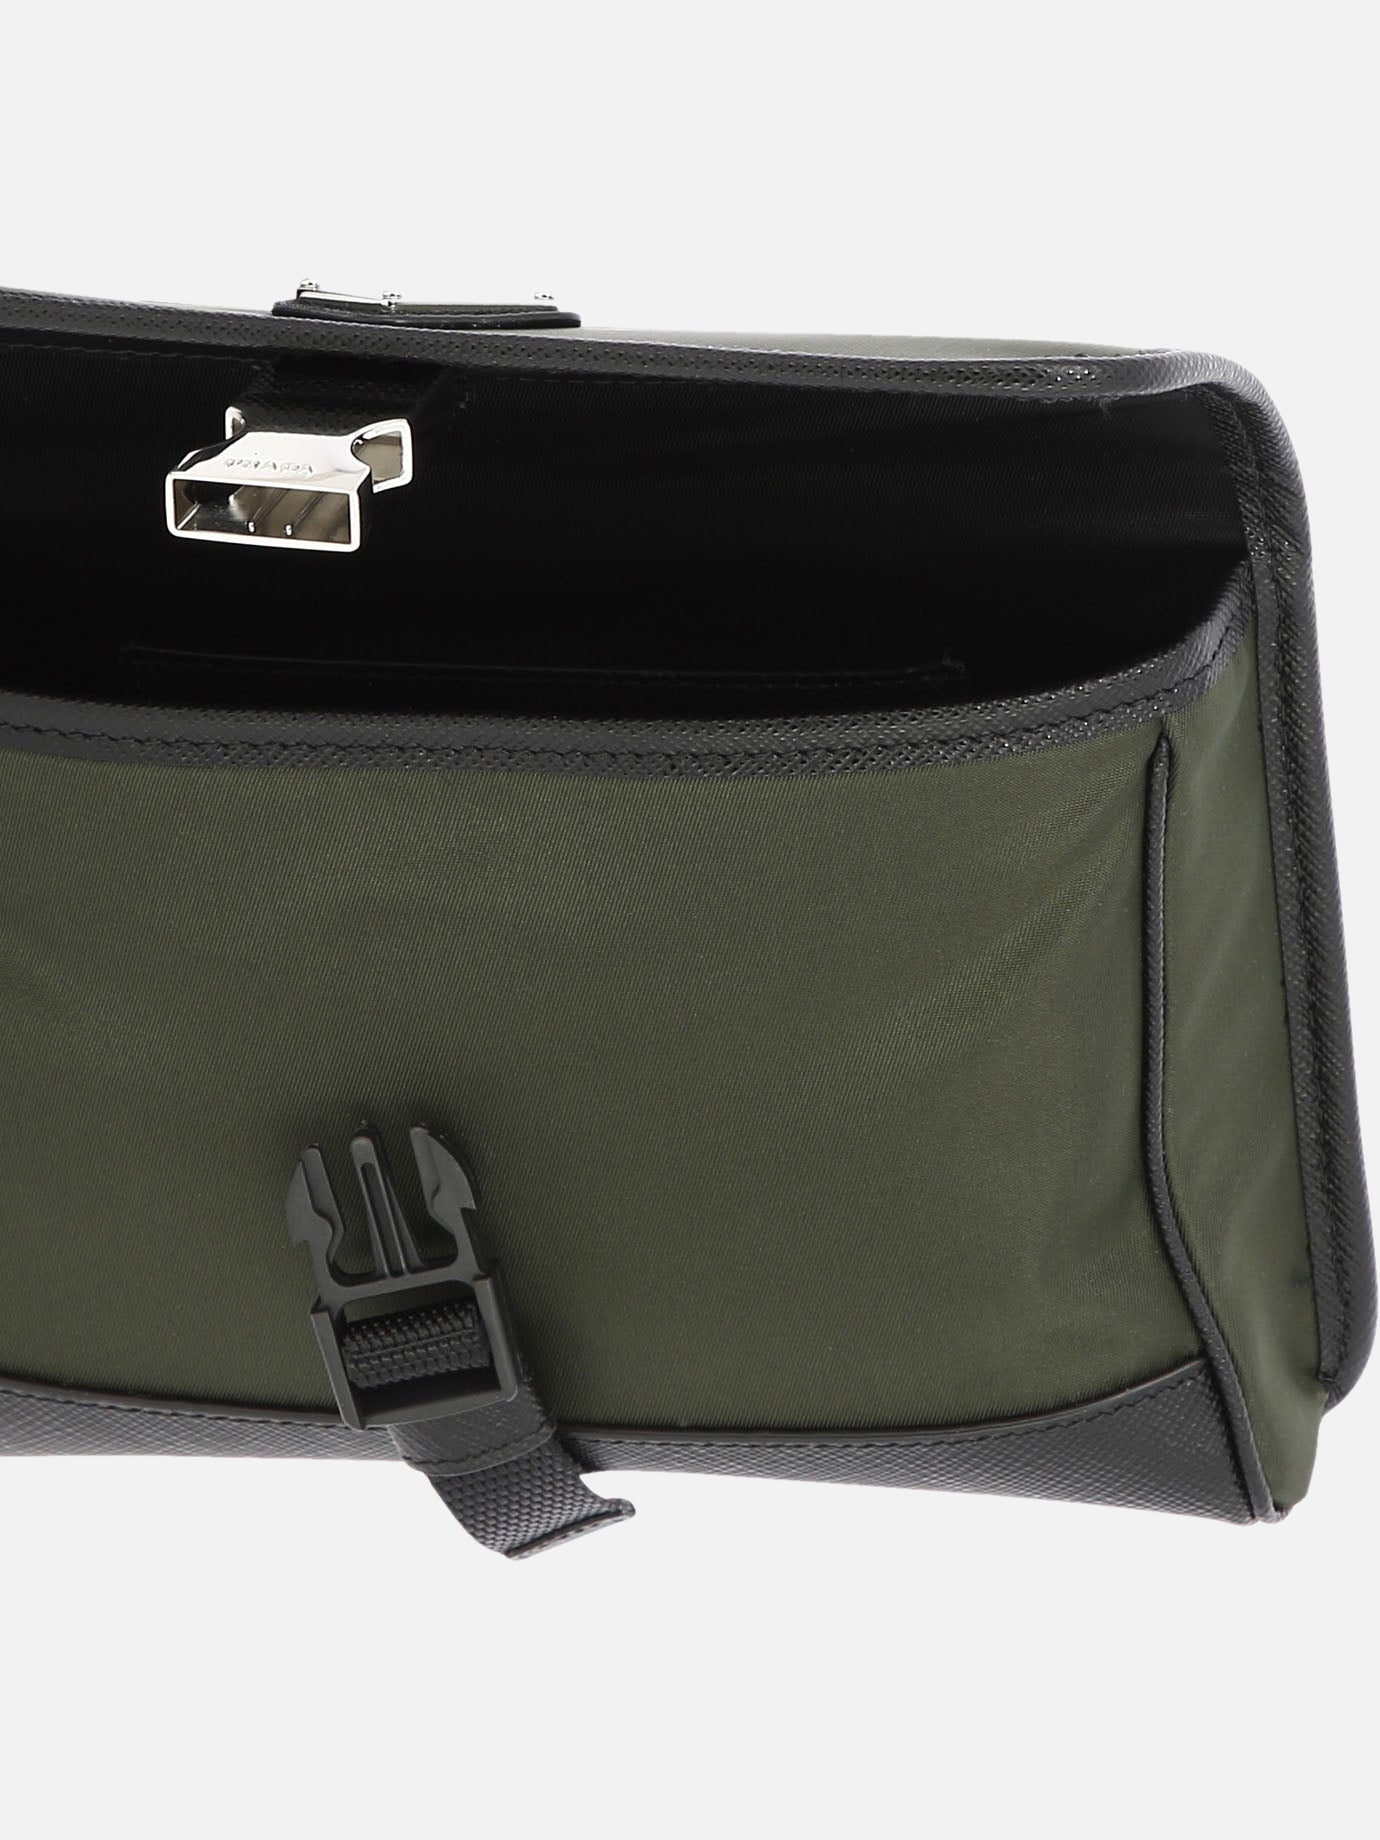 Re-Nylon and Saffiano leather smartphone case